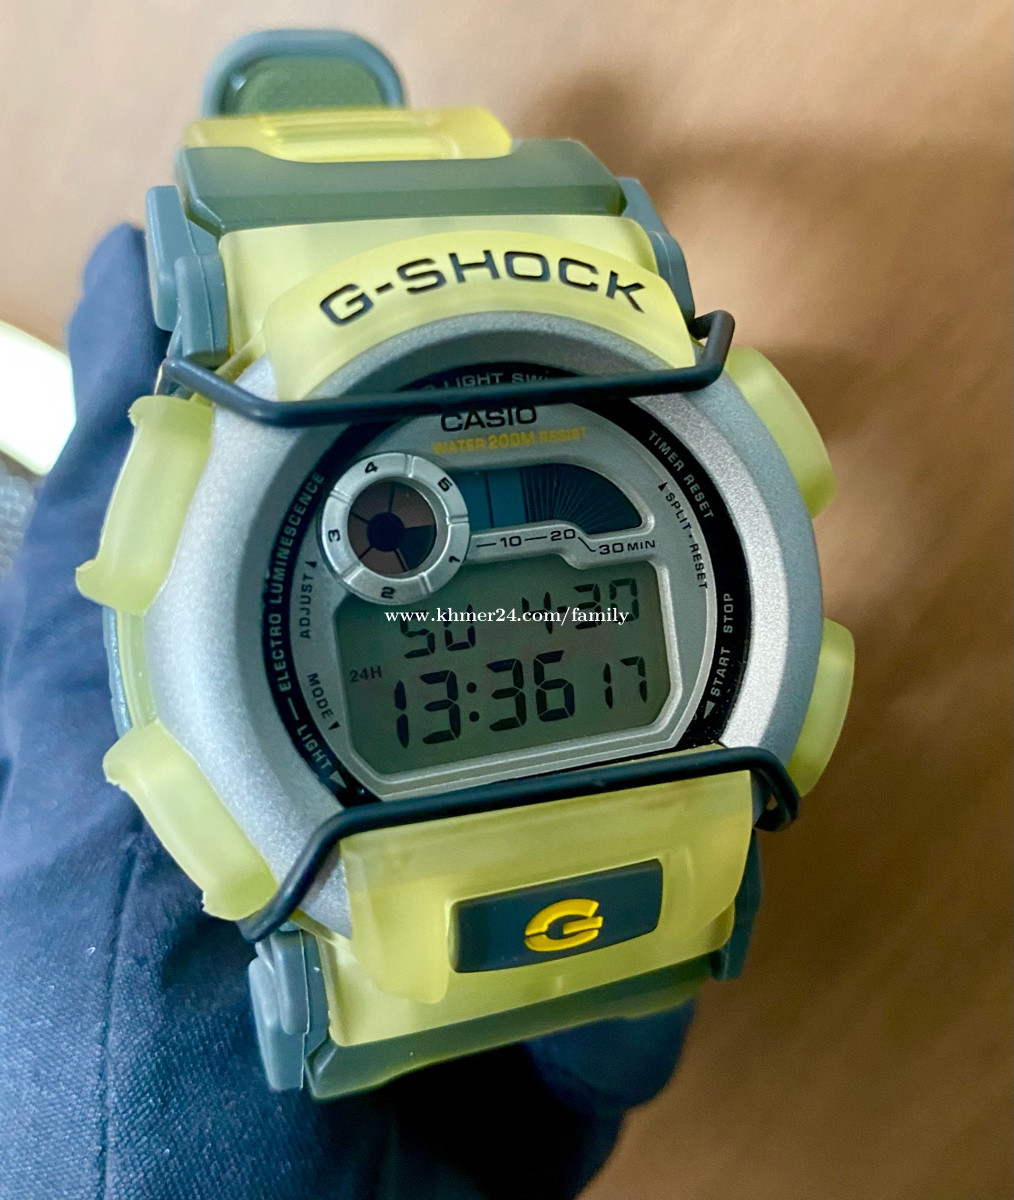 G-SHOCK G-ショック DW-003 腕時計 - 時計